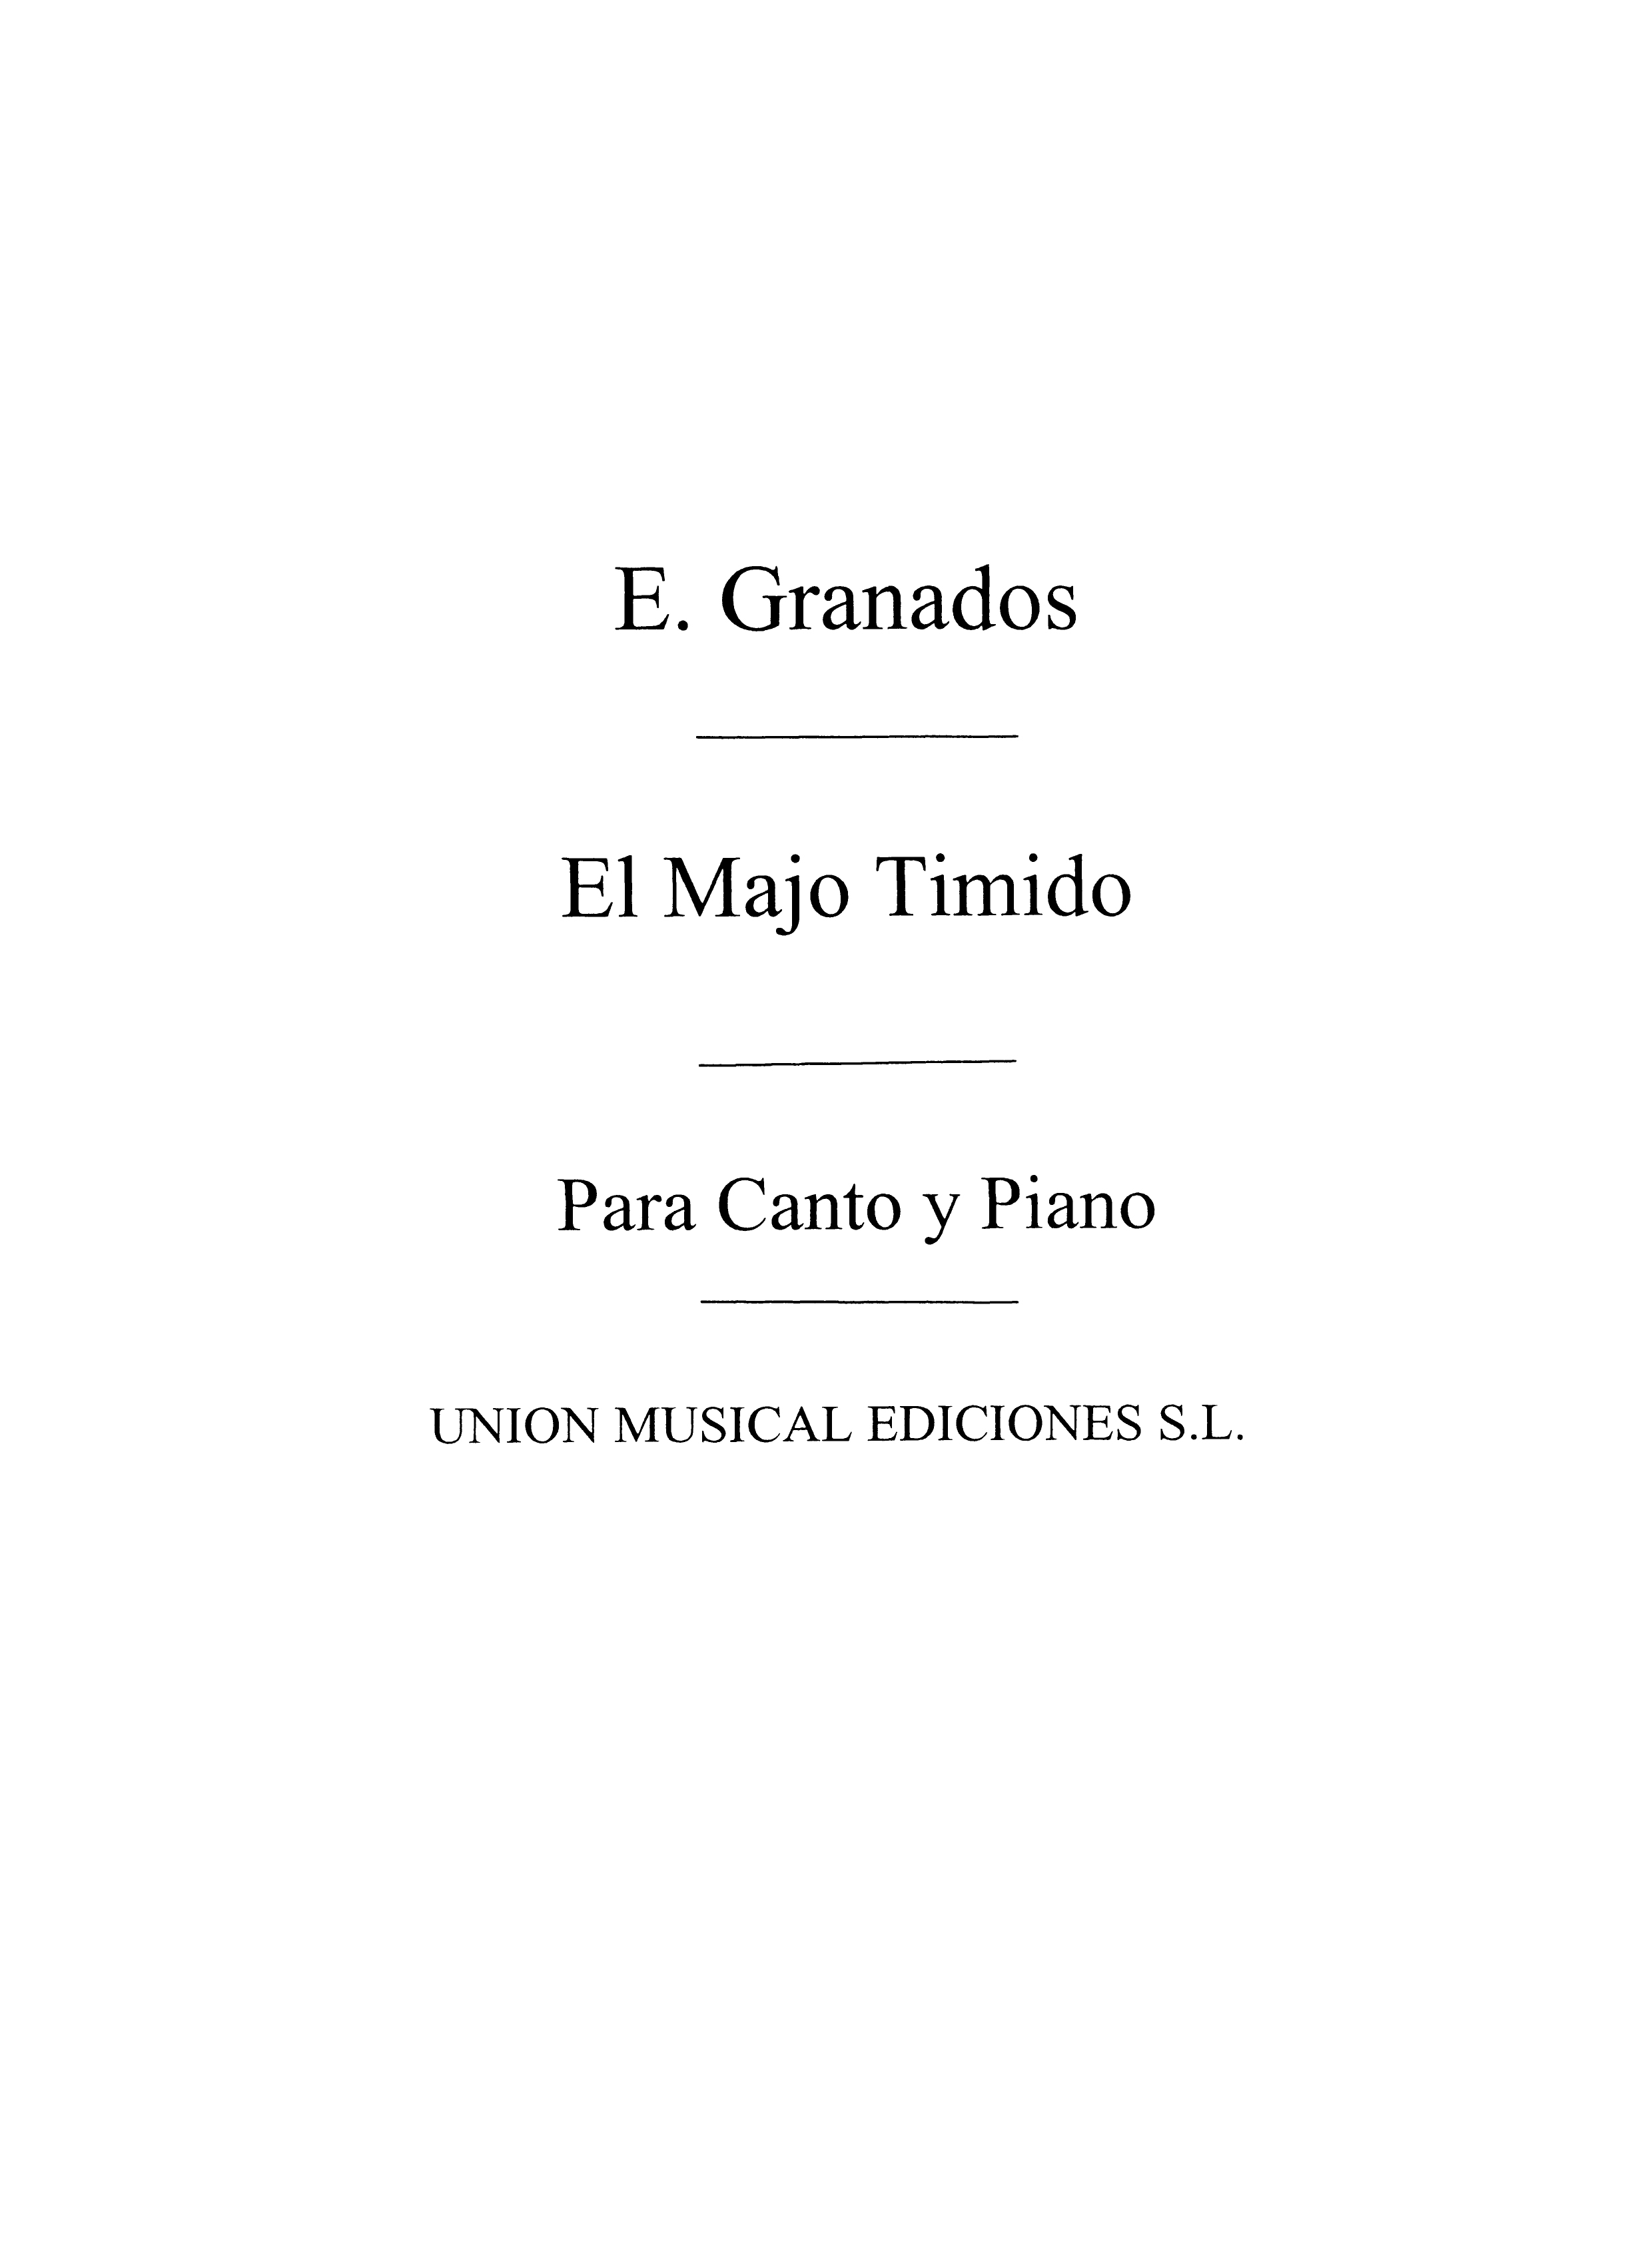 Granados: El Majo Timido From Coleccion De Tonadillas for Voice and Piano